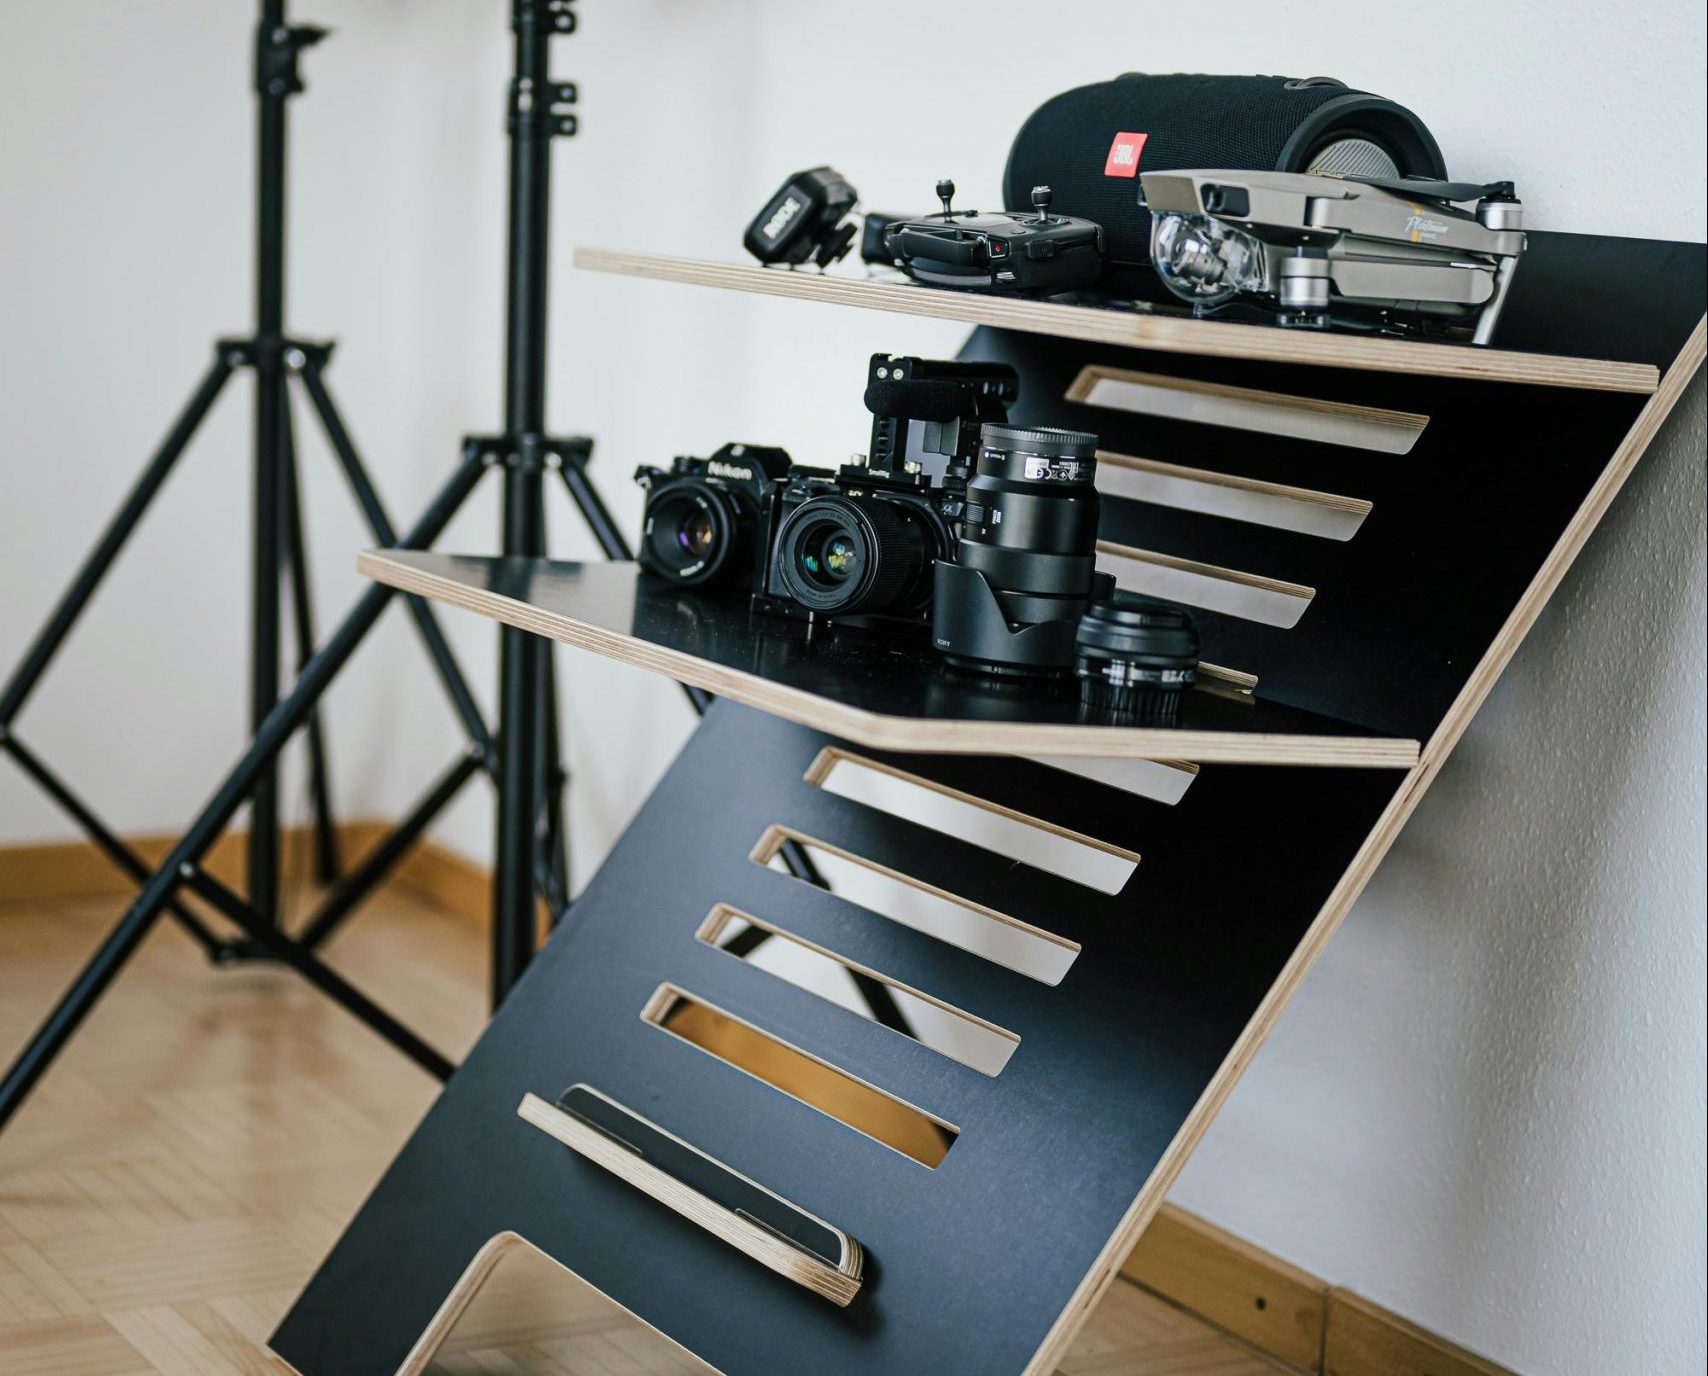 camera gear on a standing desk organiser